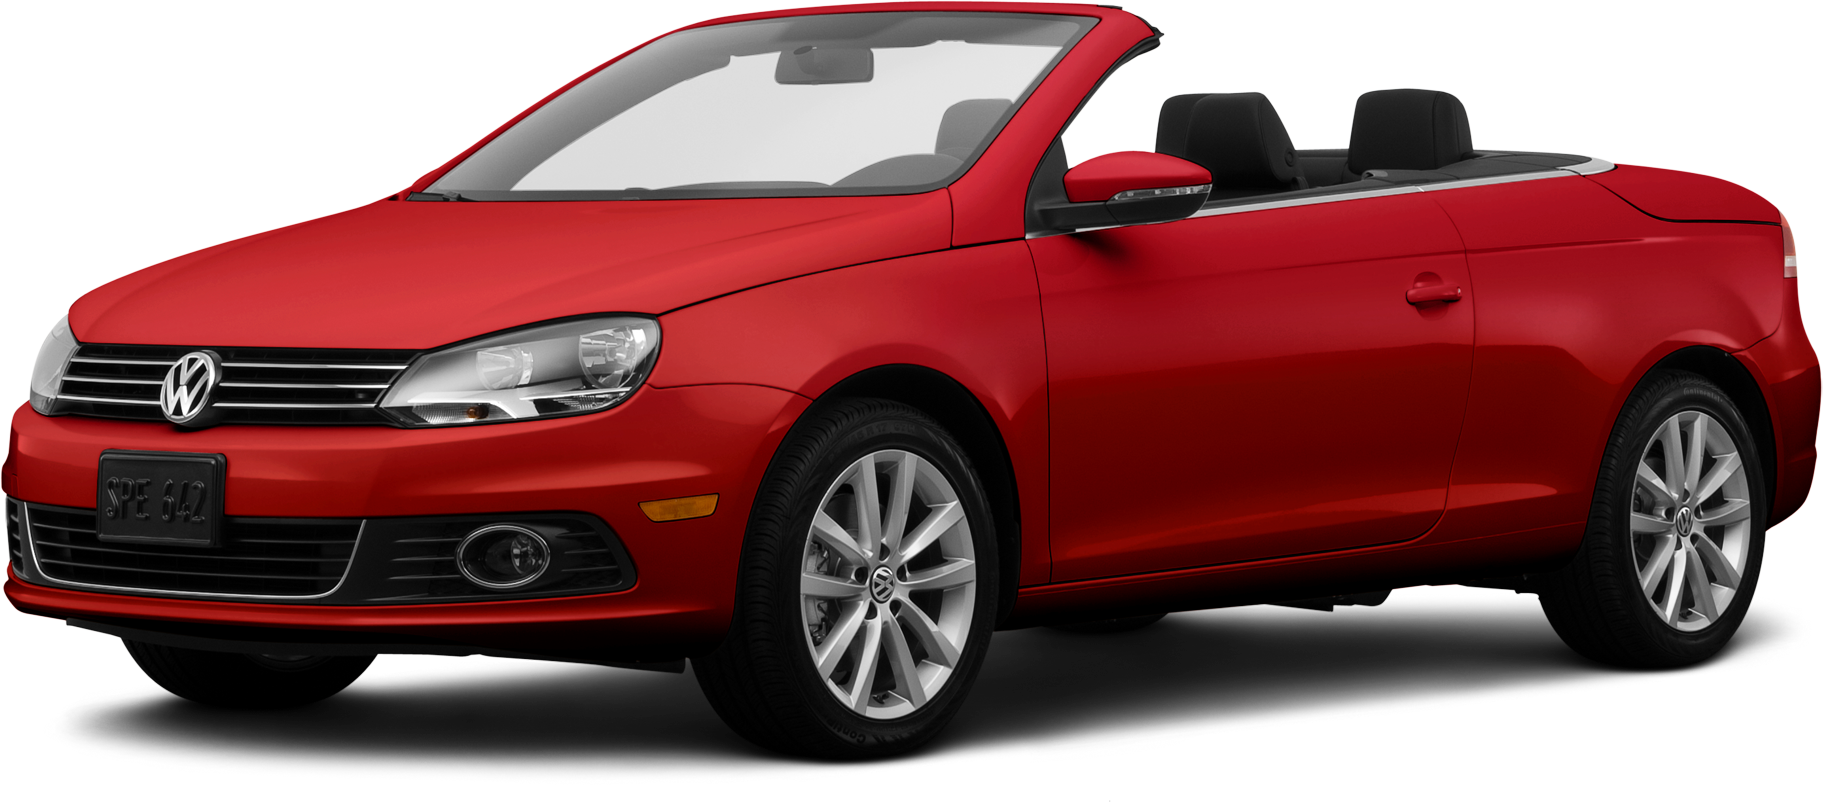 2014 Volkswagen Eos Price, Value, Ratings & Reviews | Kelley Blue Book